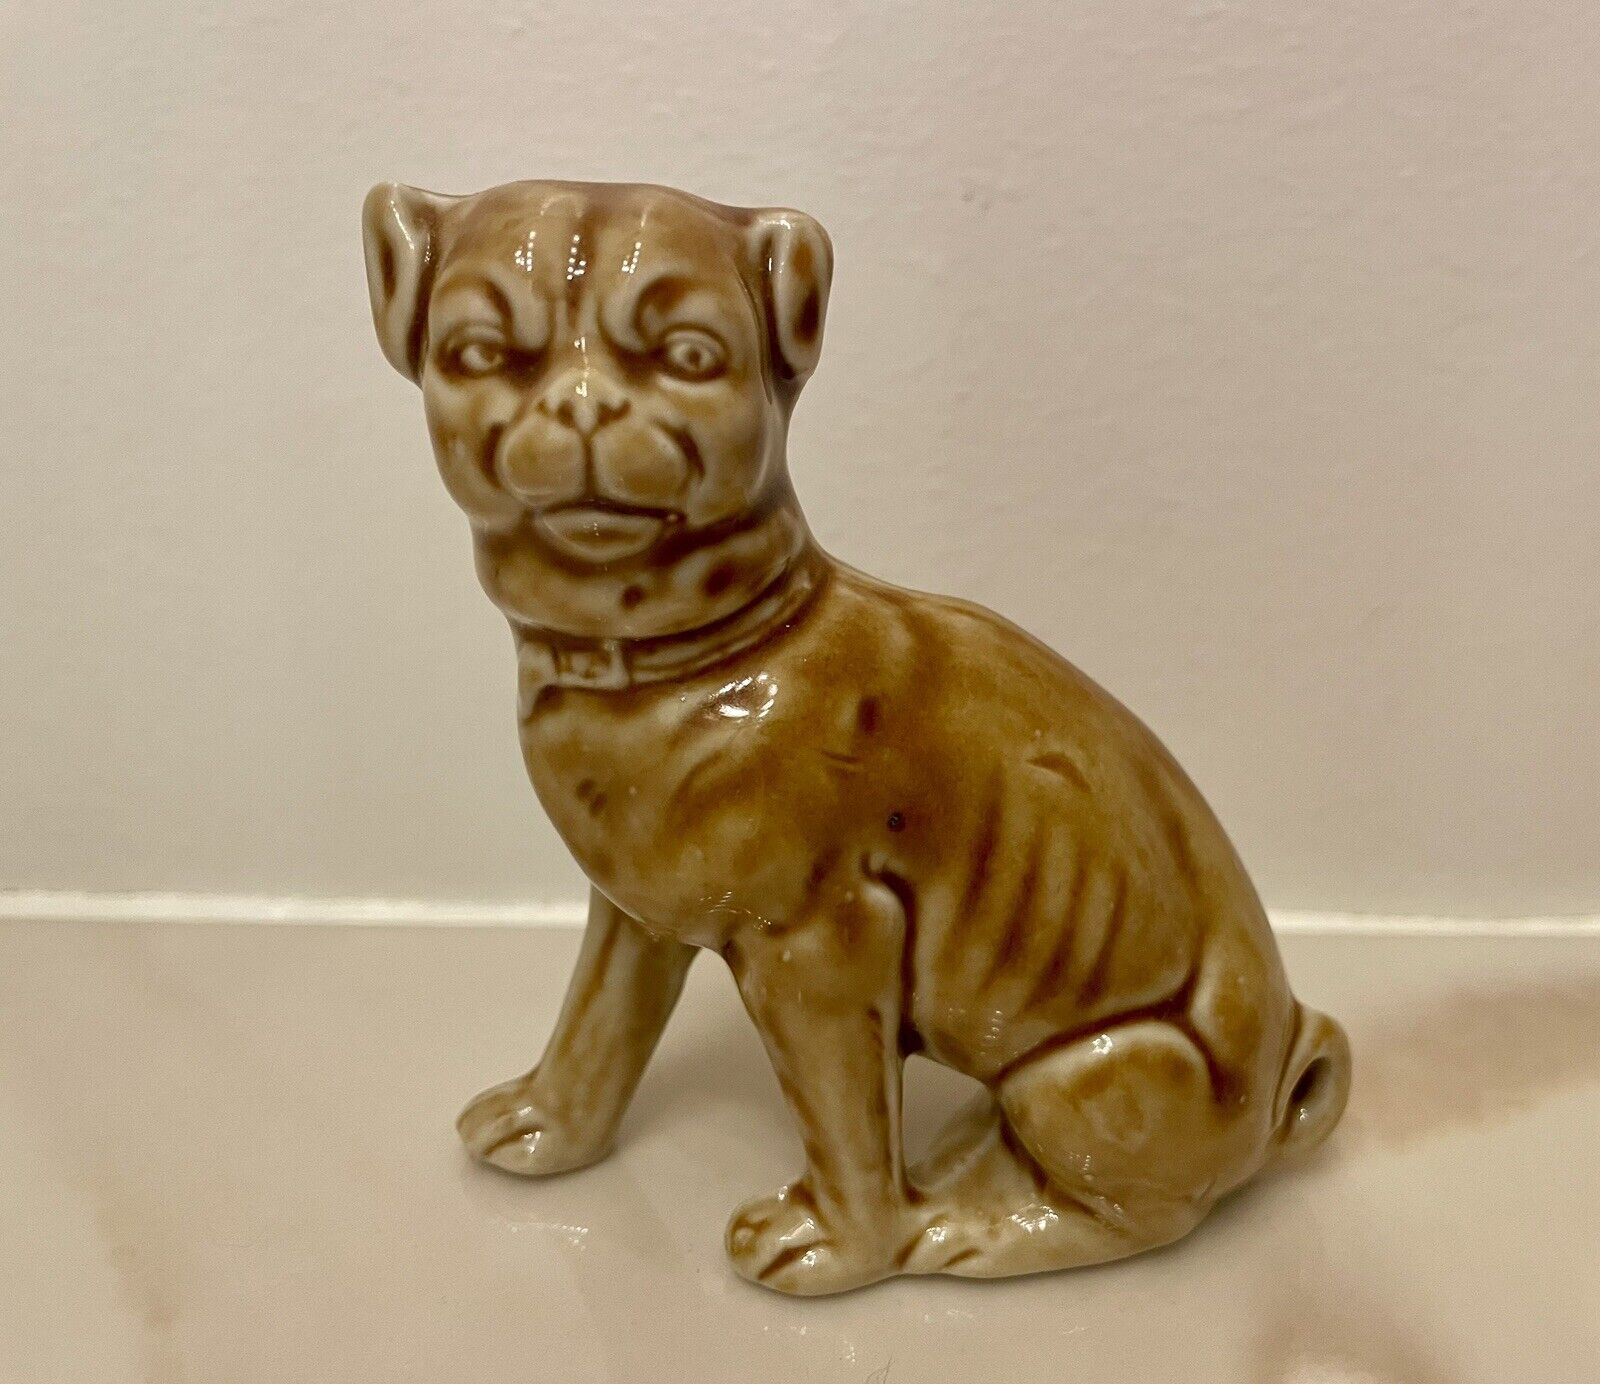 Vintage Rare Pug Dog Figurine 3.5” Tall